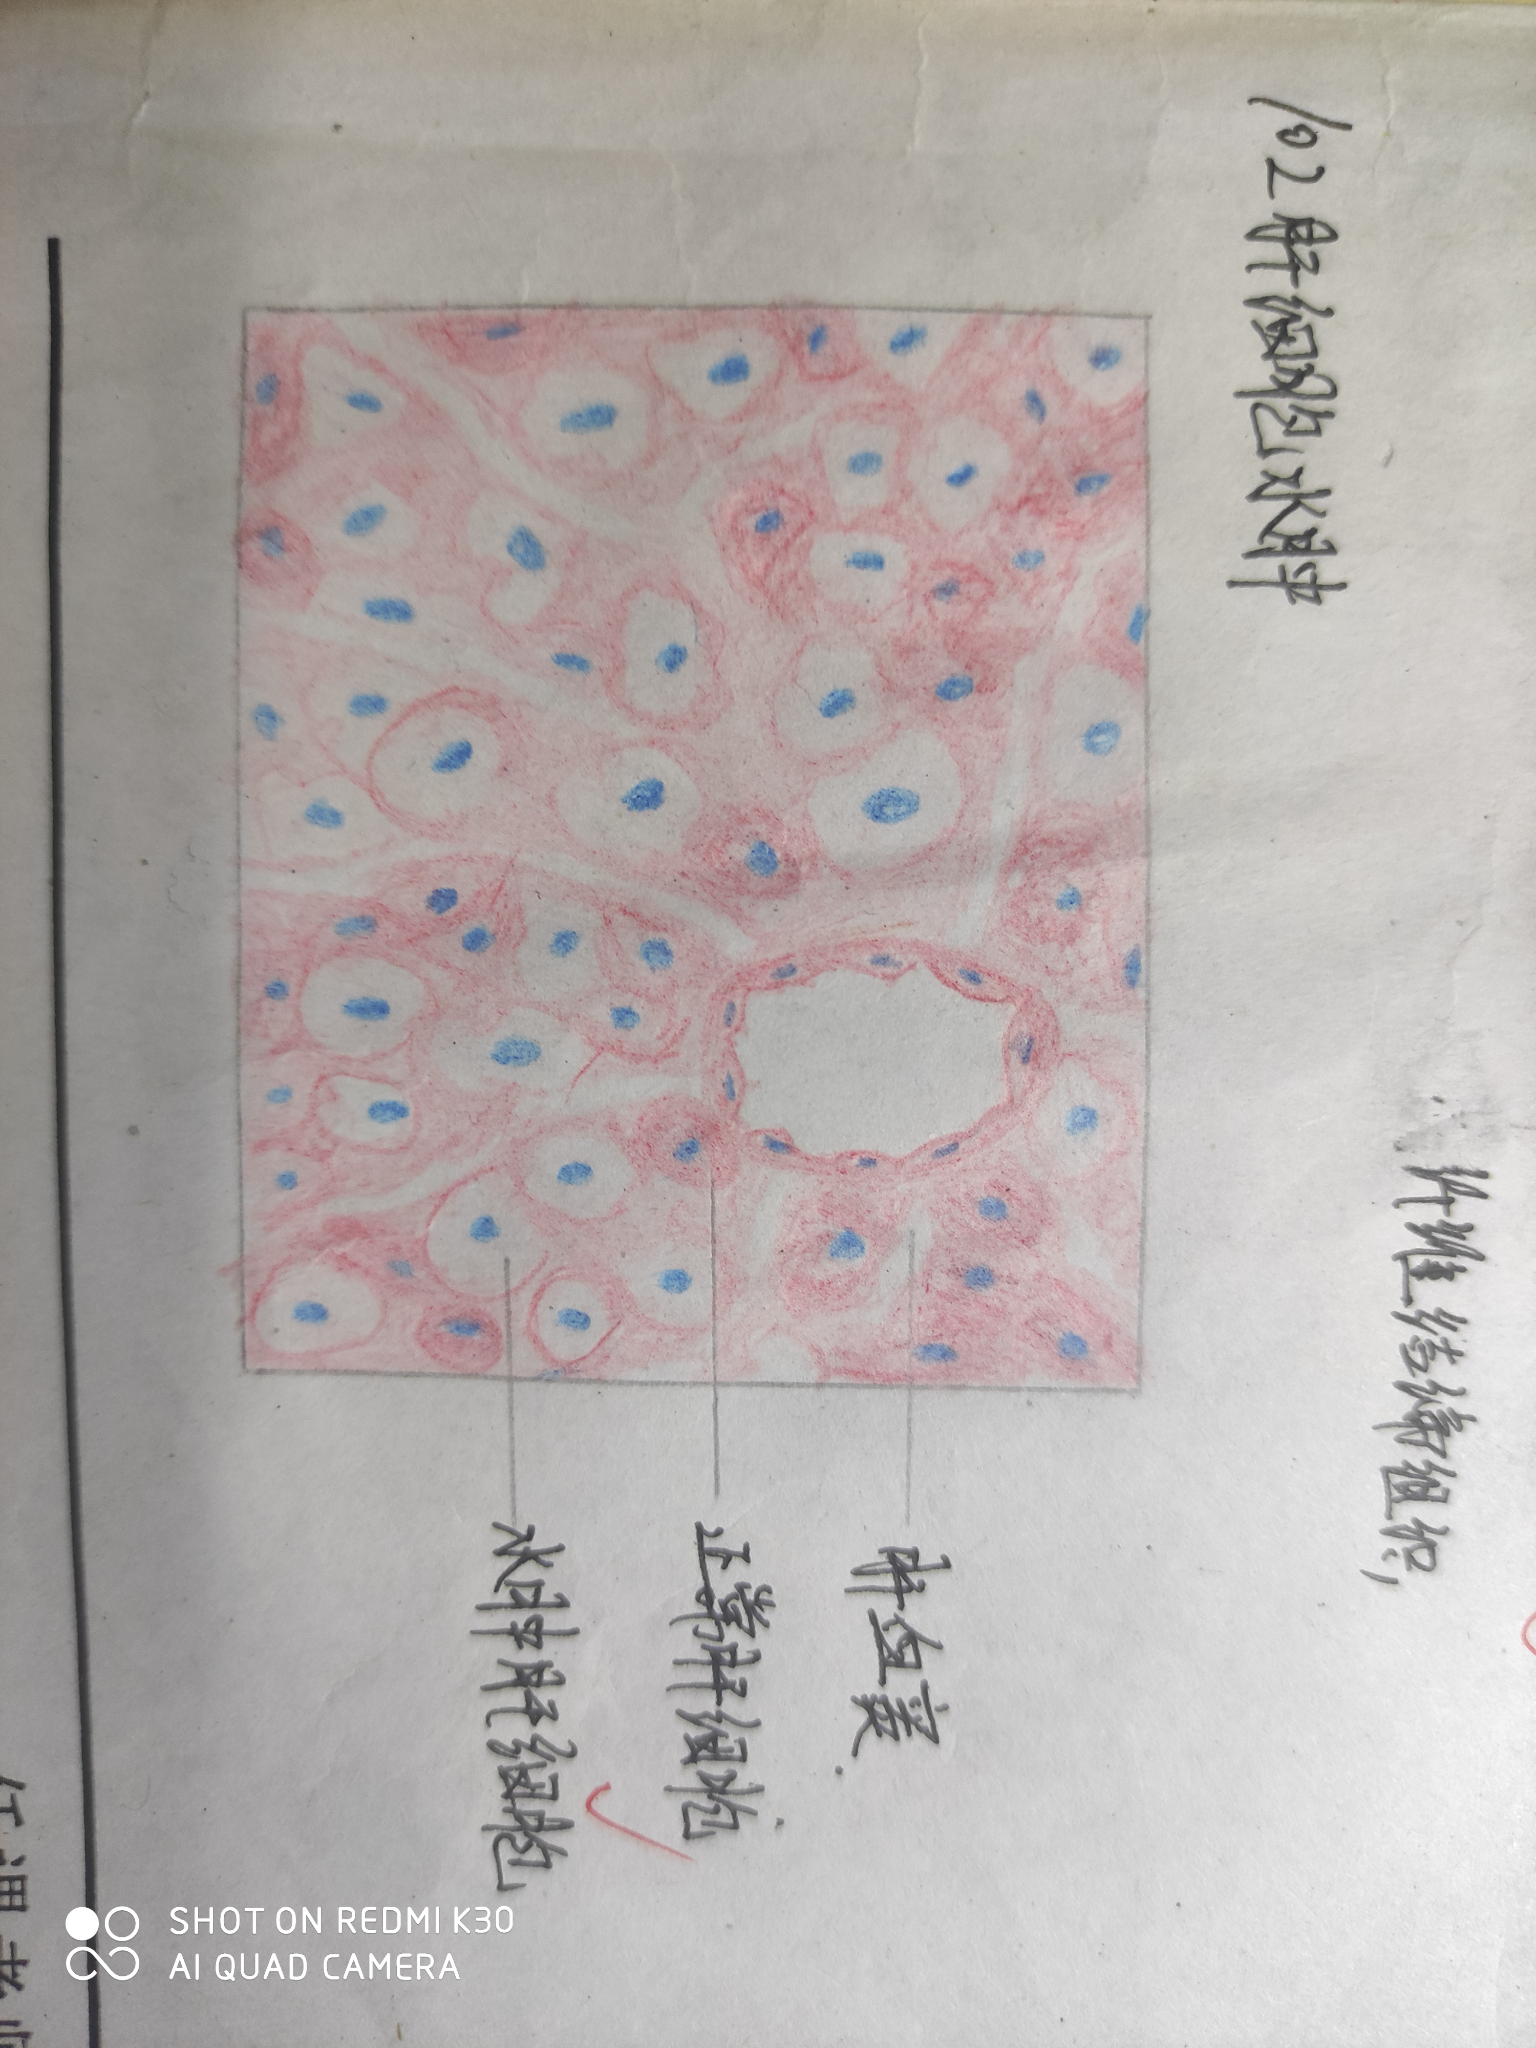 异物巨细胞红蓝铅笔图图片